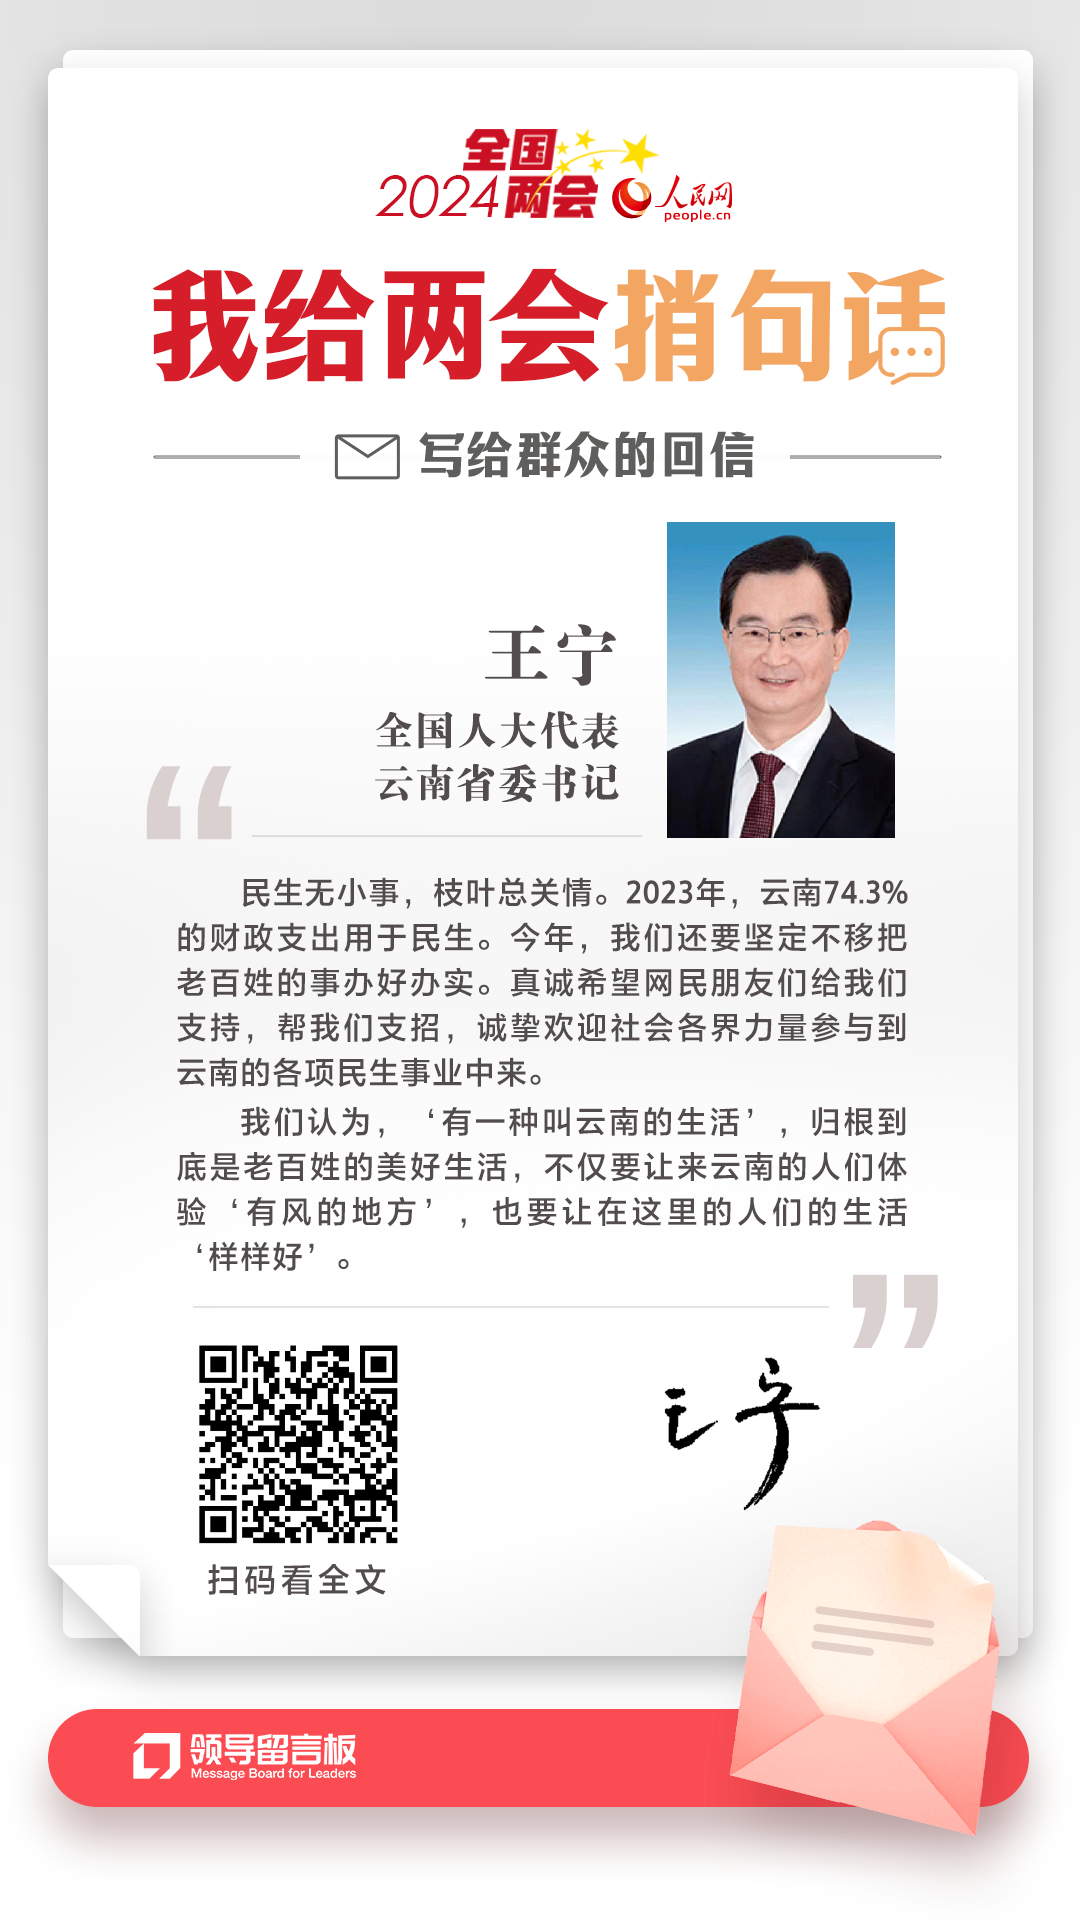 全国人大代表、云南省委书记王宁给人民网网友回信